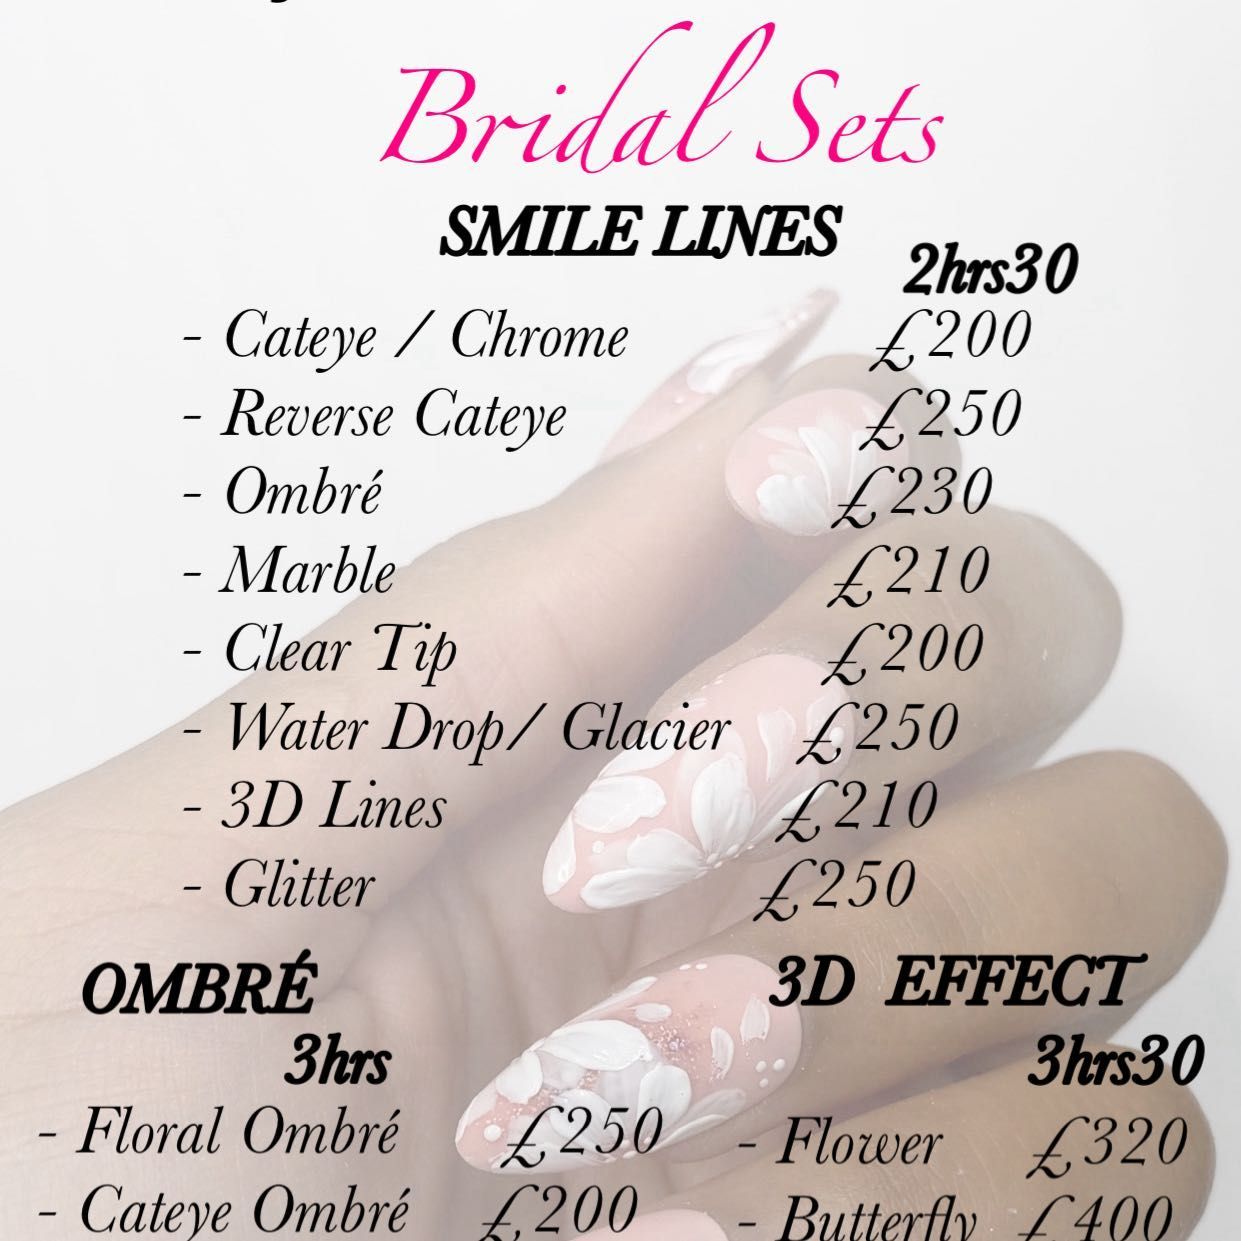 Bridal Sets portfolio